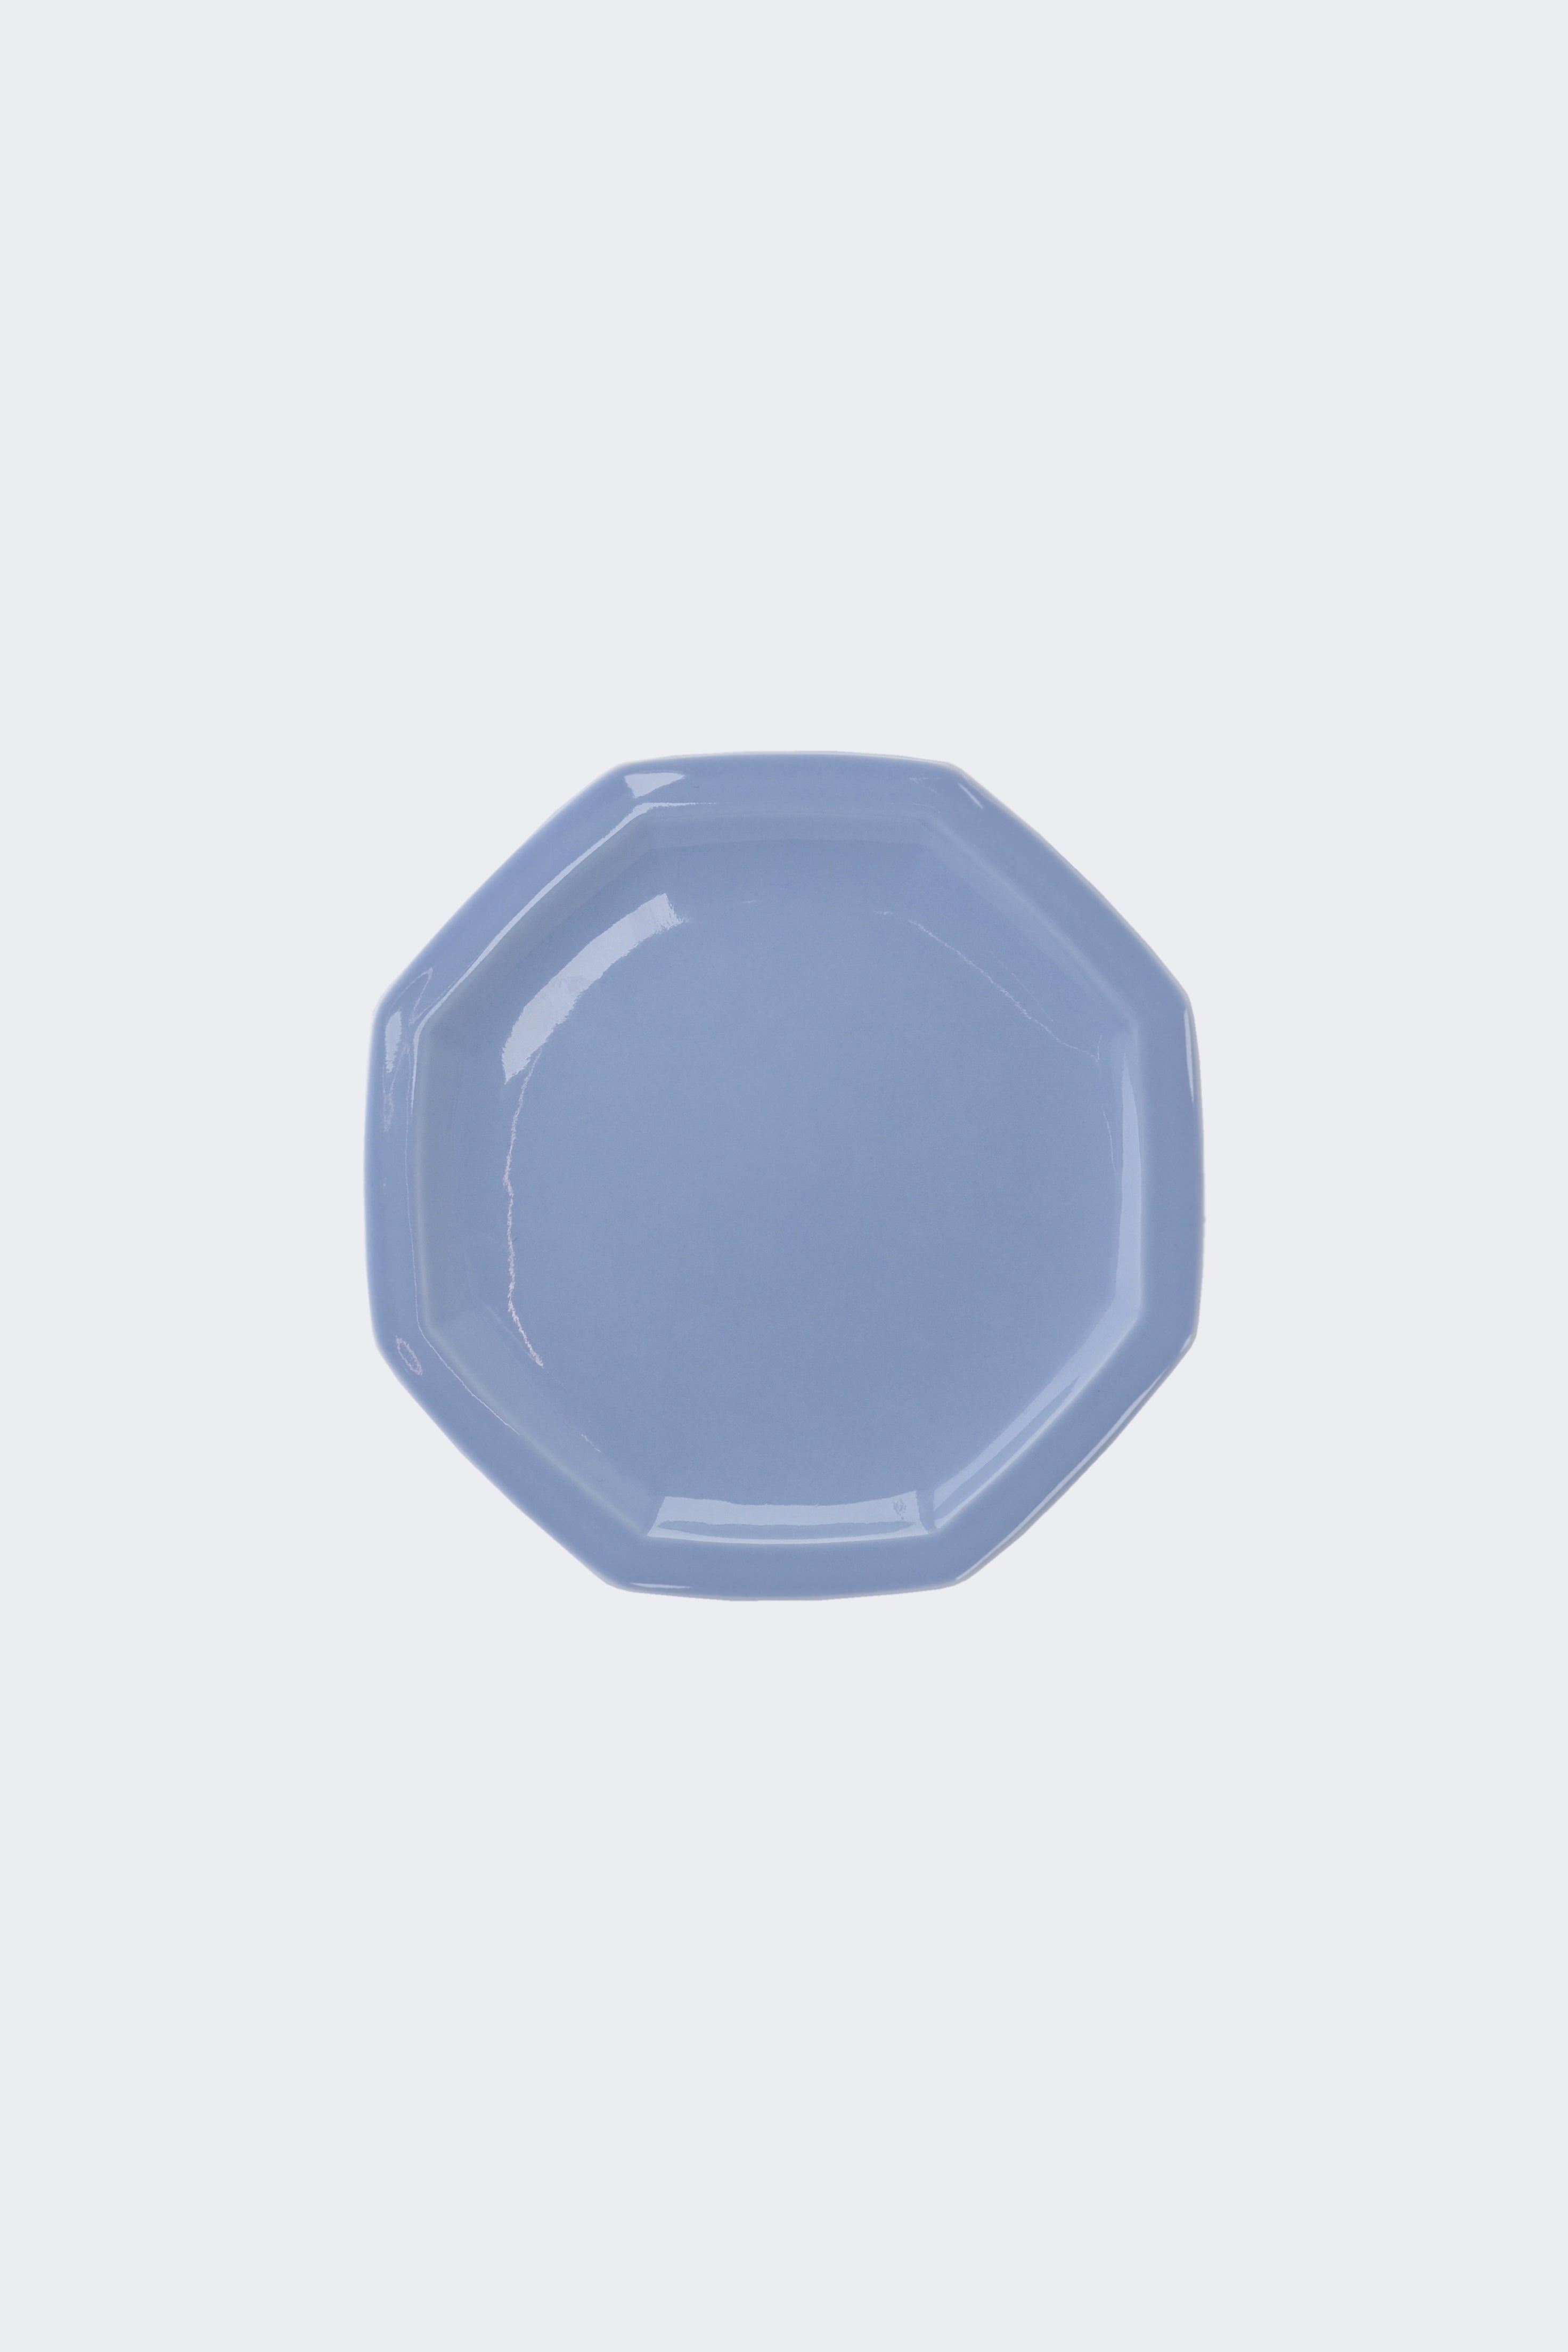 Octangle lunch plate light blue-Ogre-[interior]-[design]-KIOSK48TH